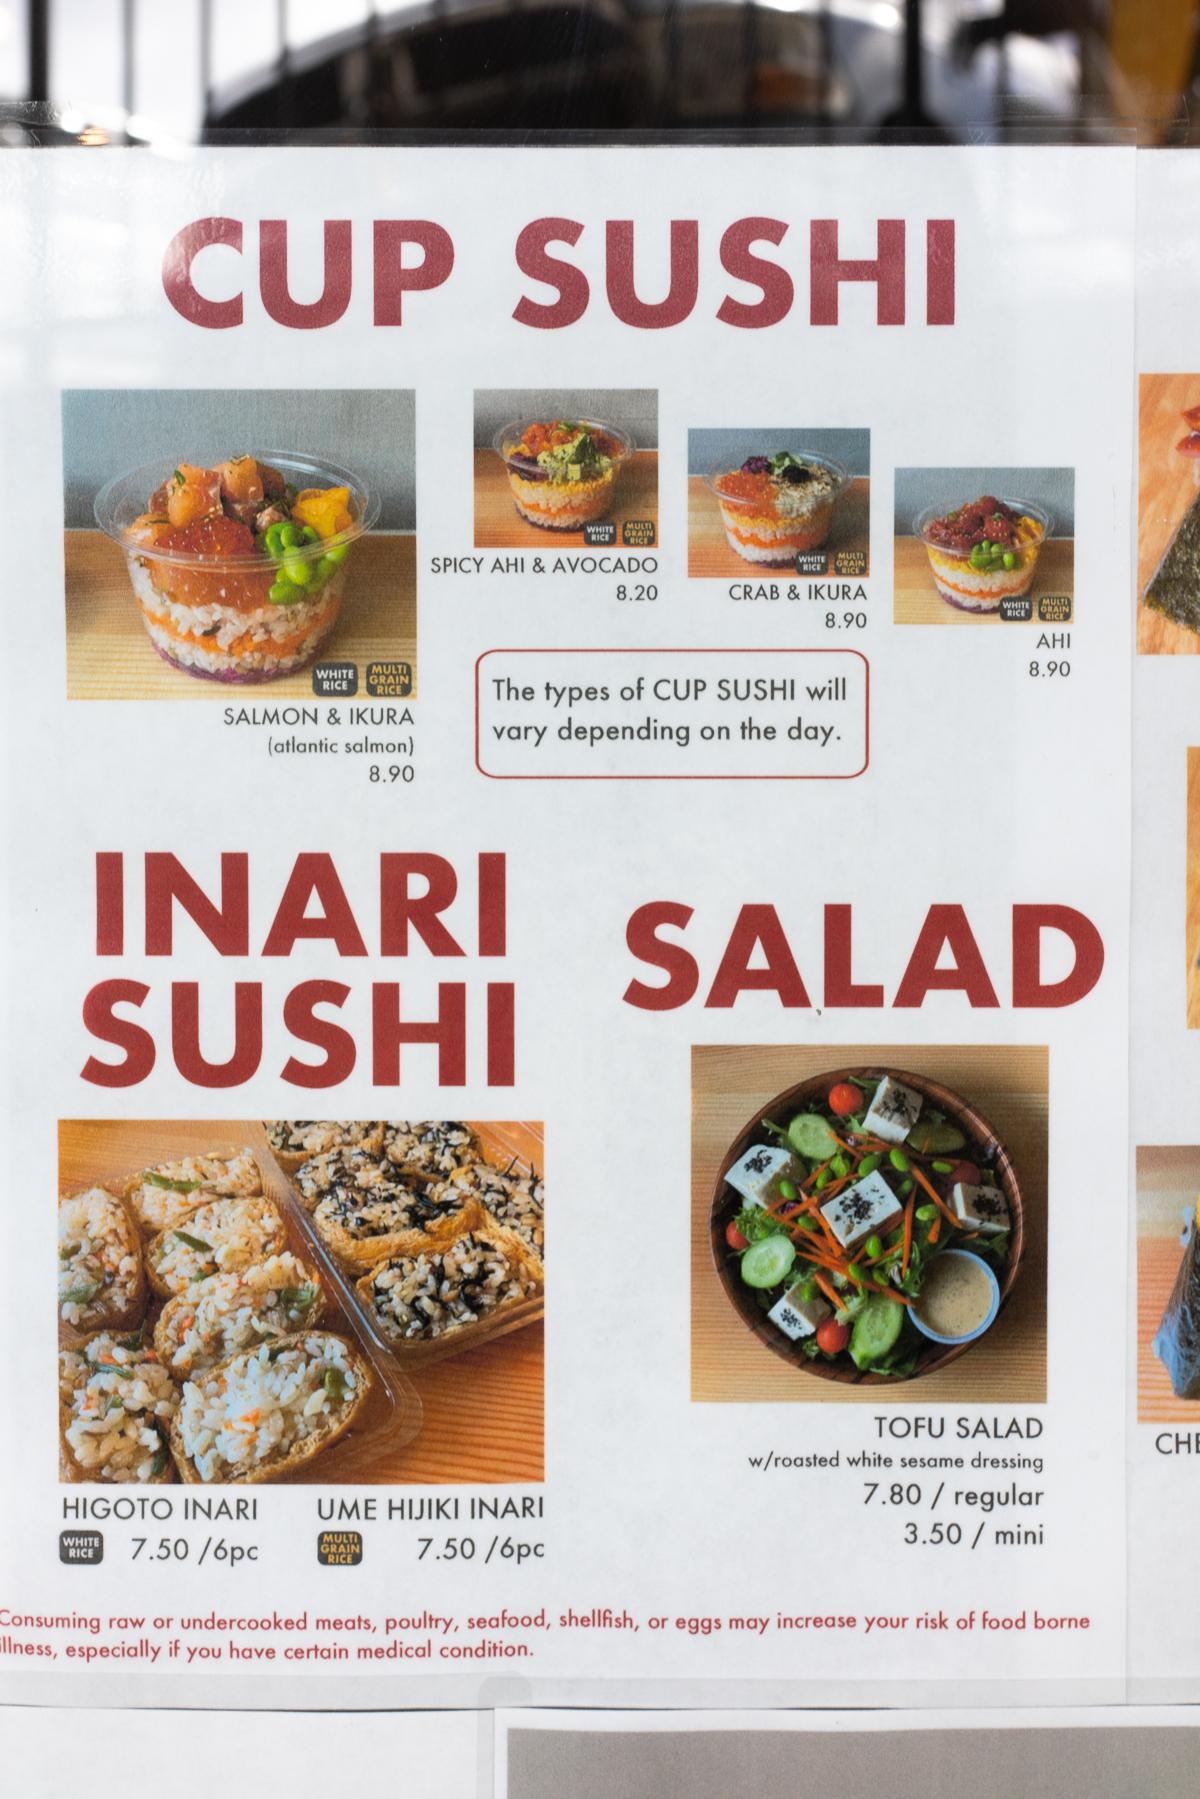 Cup Sushi, Inari Sushi, and Salad menu at Daily selection of bentos and musubi at Mentaiko and egg musubi